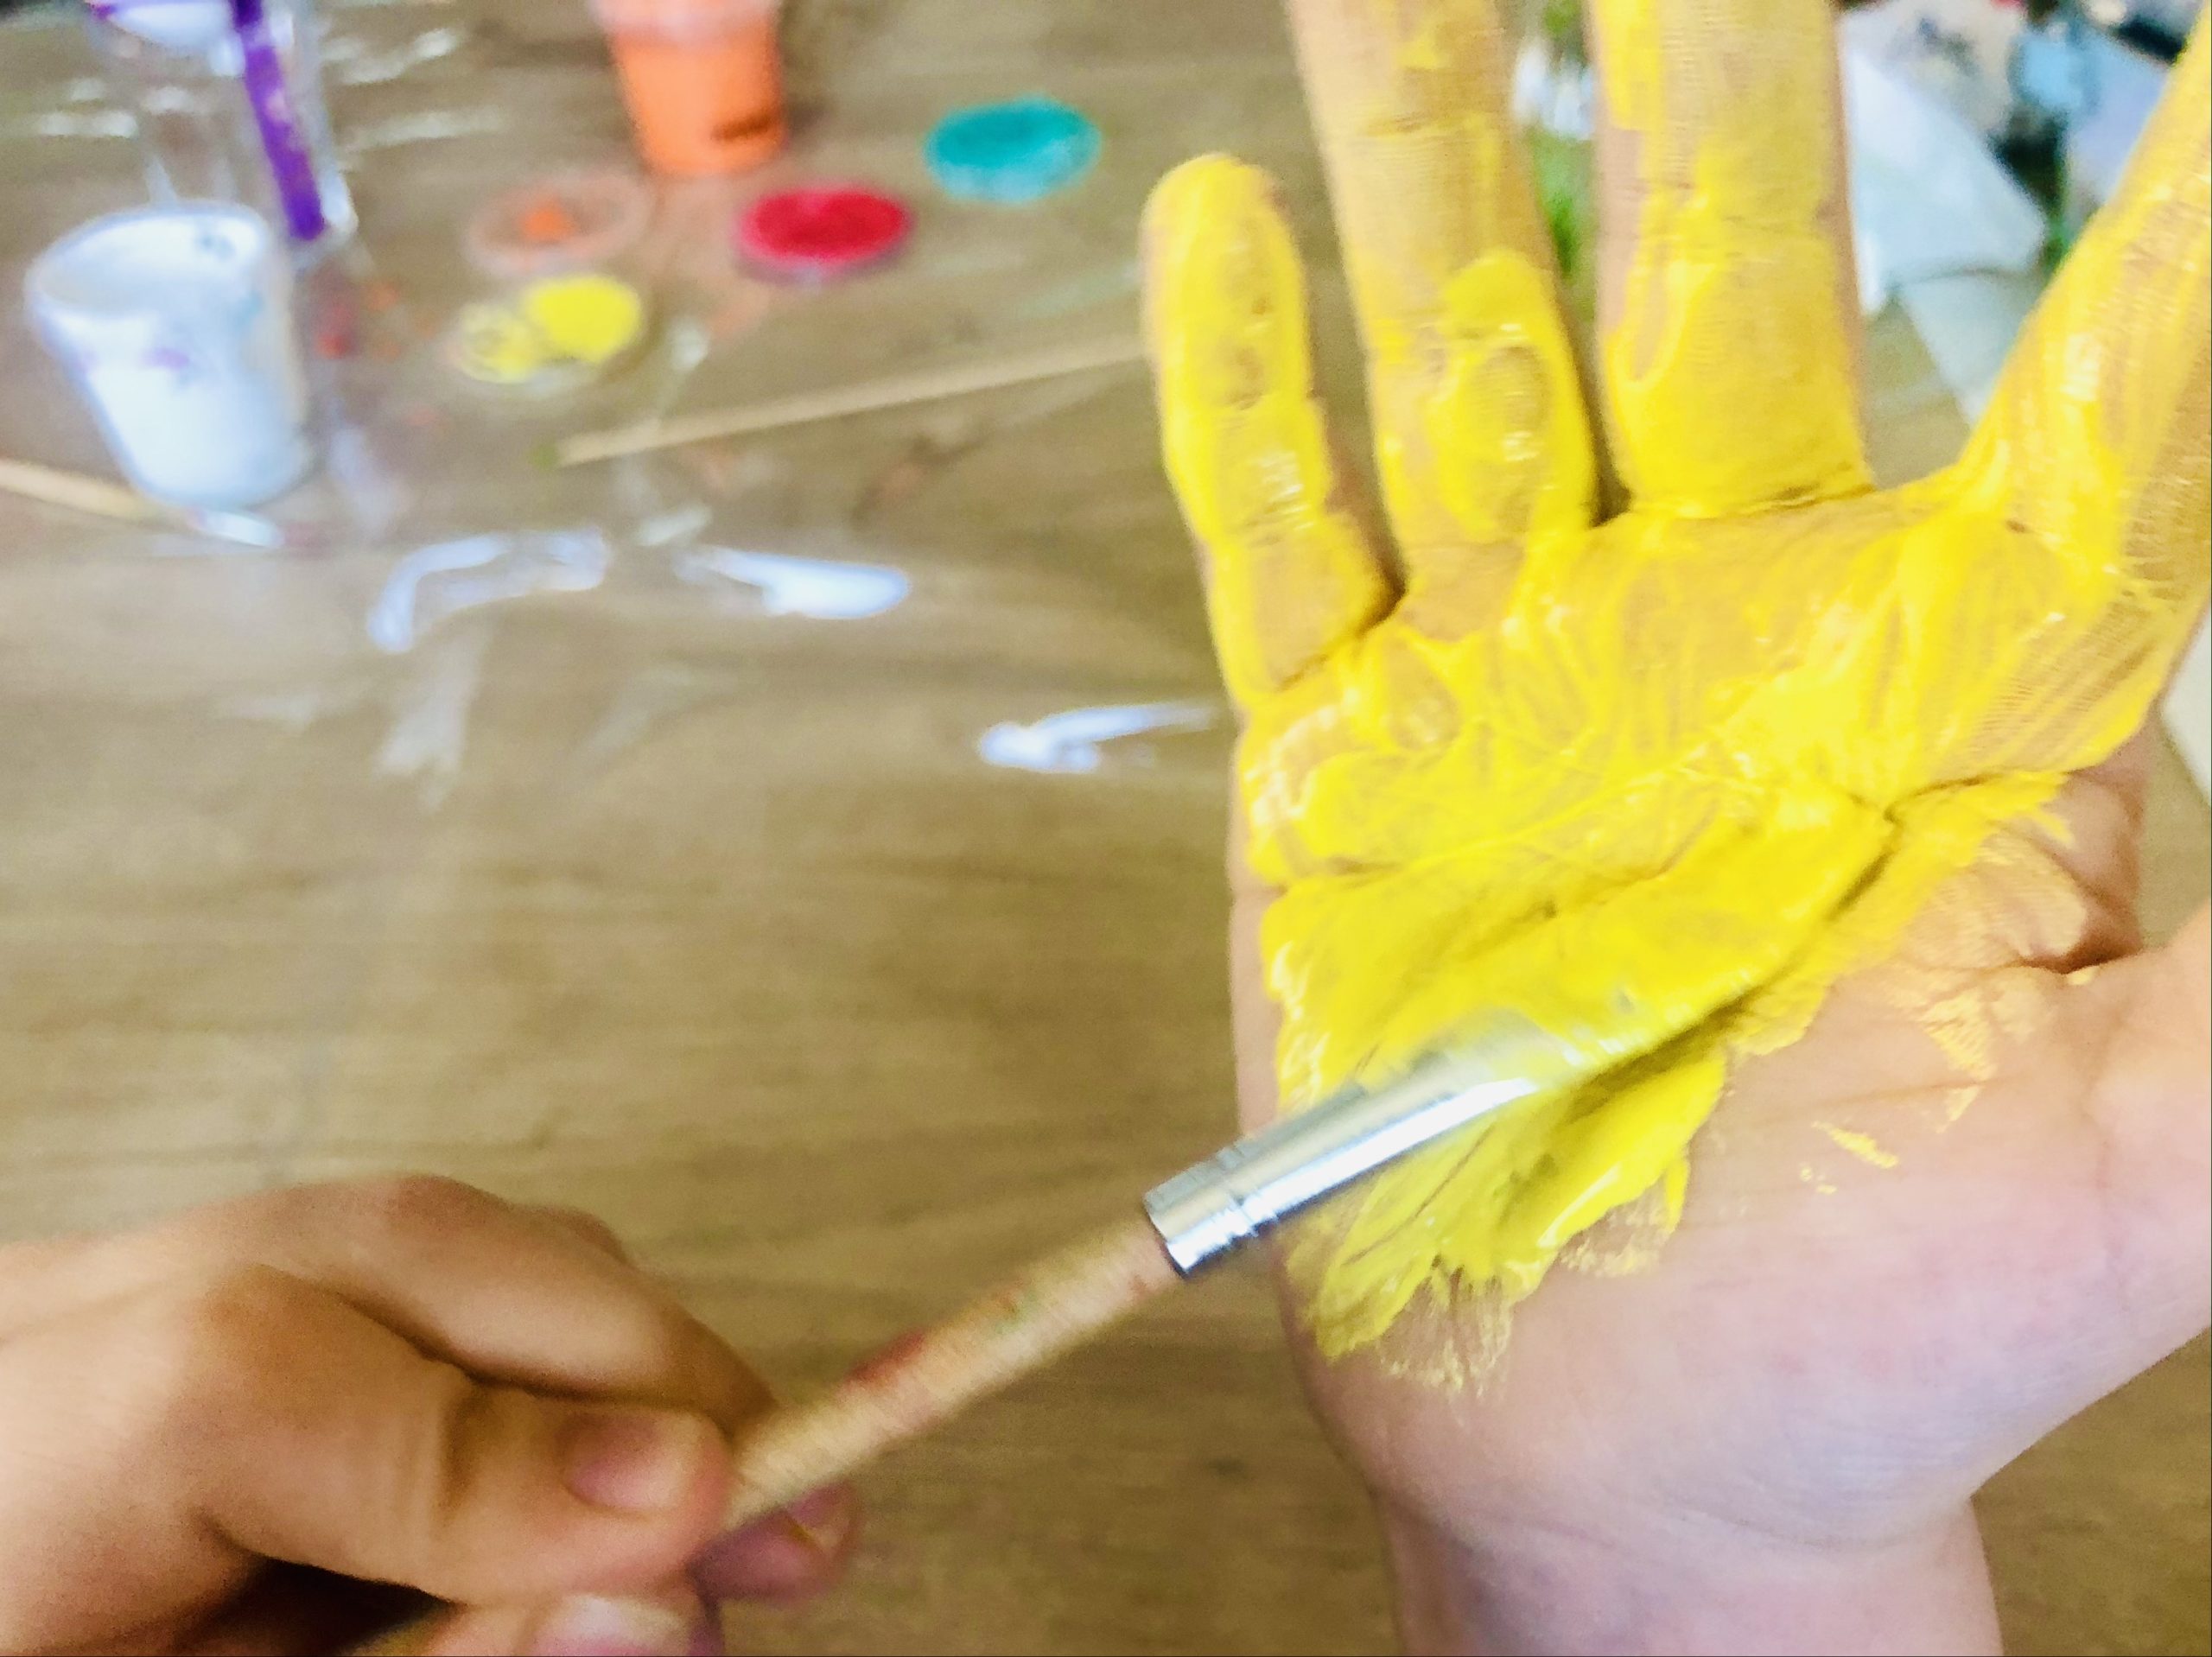 Bild zum Schritt 11 für das Bastel- und DIY-Abenteuer für Kinder: 'Hierfür malt ihr ebenfalls eine Hand mit gelber Fingerfarbe an.'